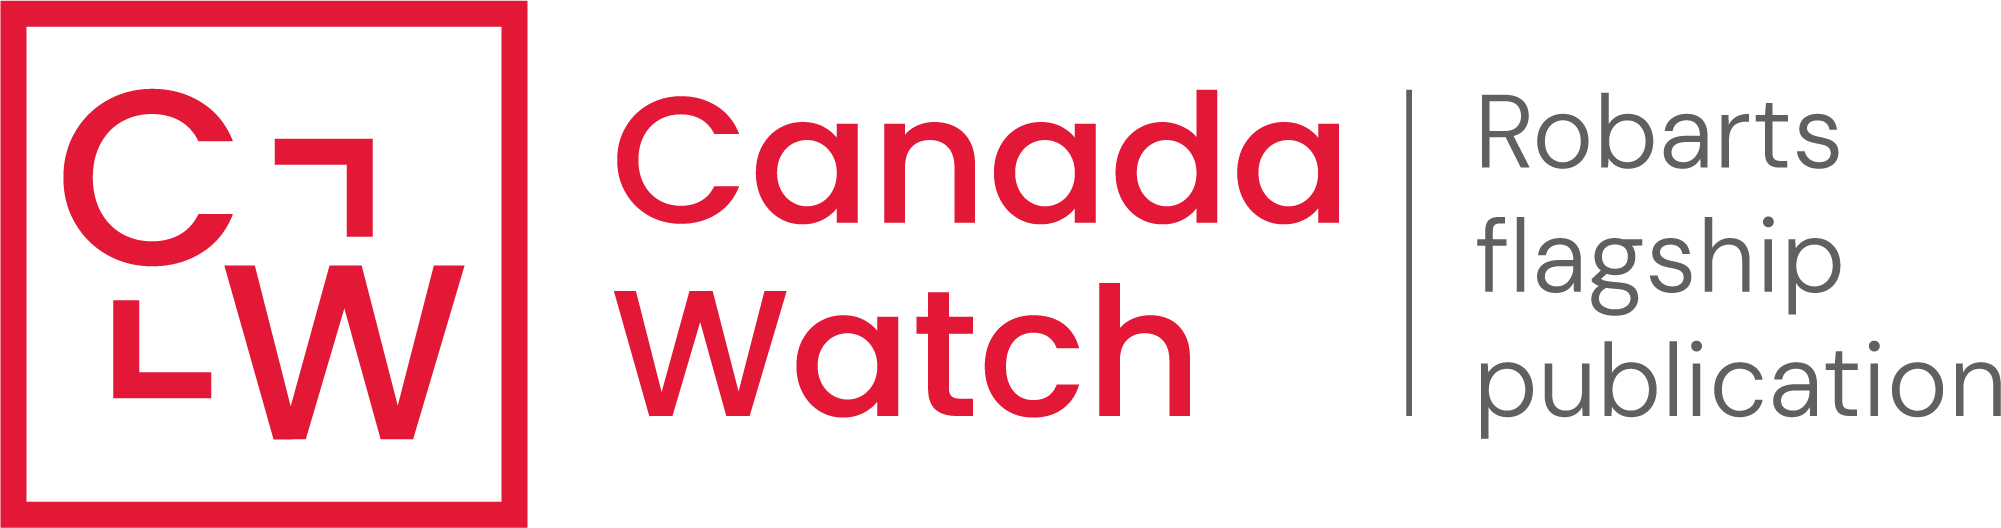 Canada Watch : logo de la publication phare de Robarts en rouge.